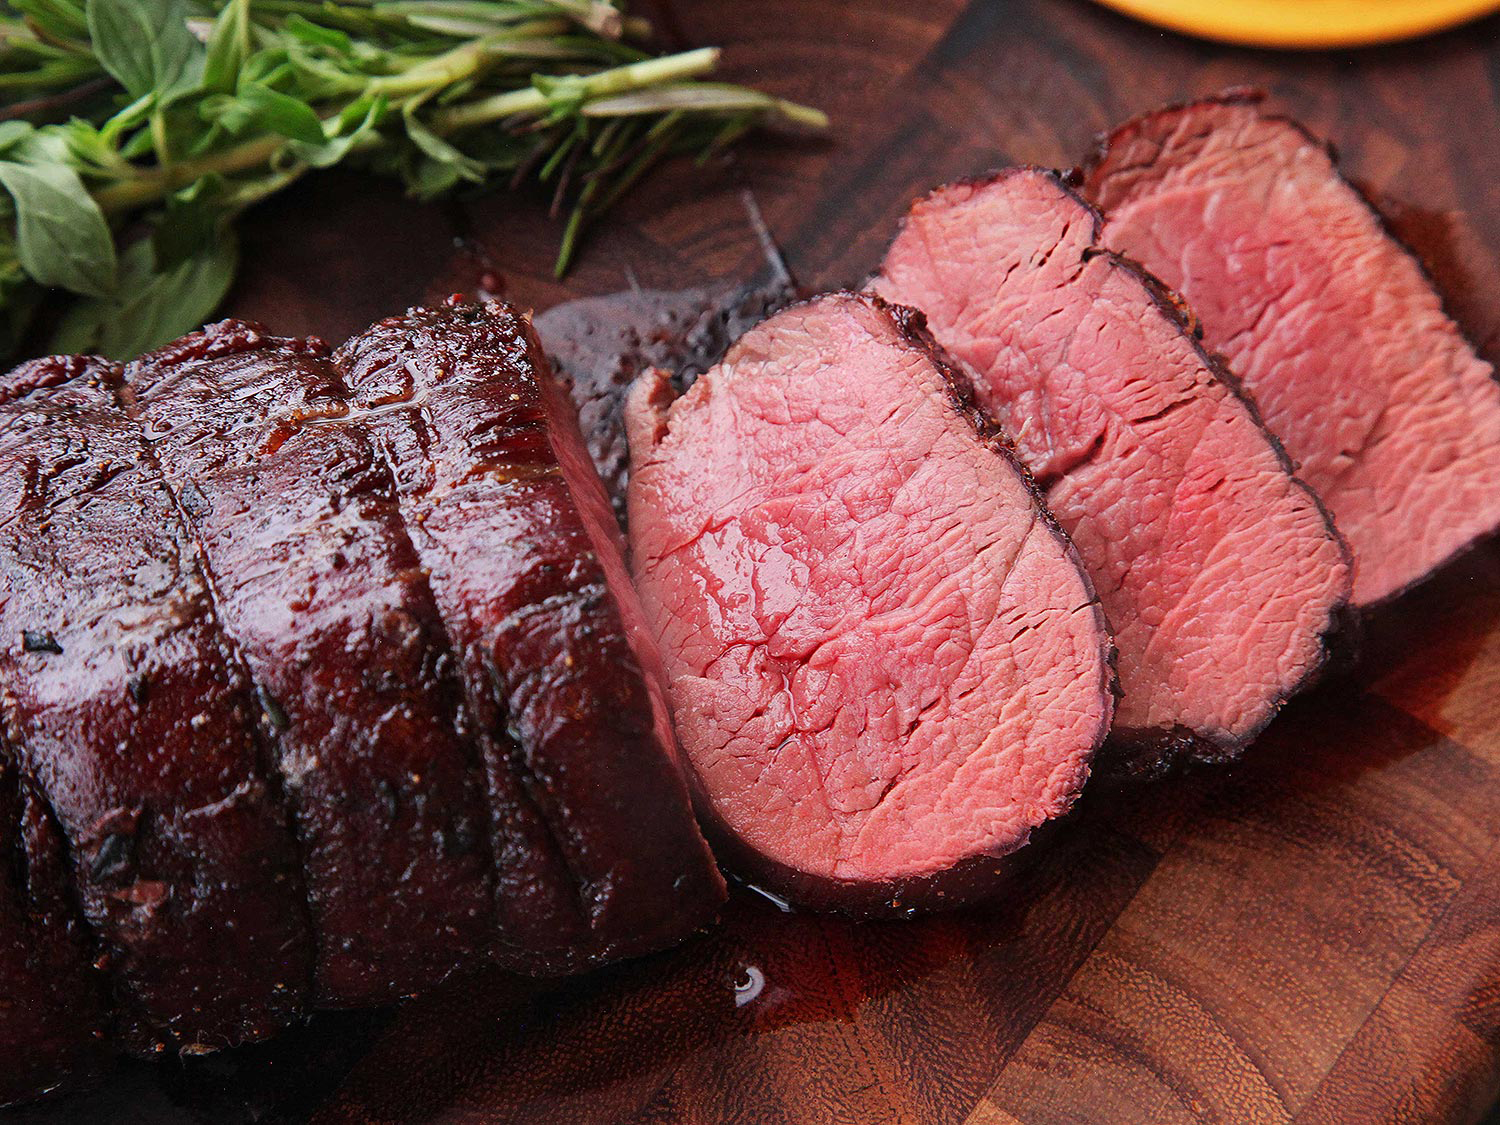 Το κόκκινο κρέας αποτελεί εξαιρετική πηγή ψευδαργύρου, το ίδιο φυσικό διεγερτικό που βρίσκουμε και στα οστρακοειδή.